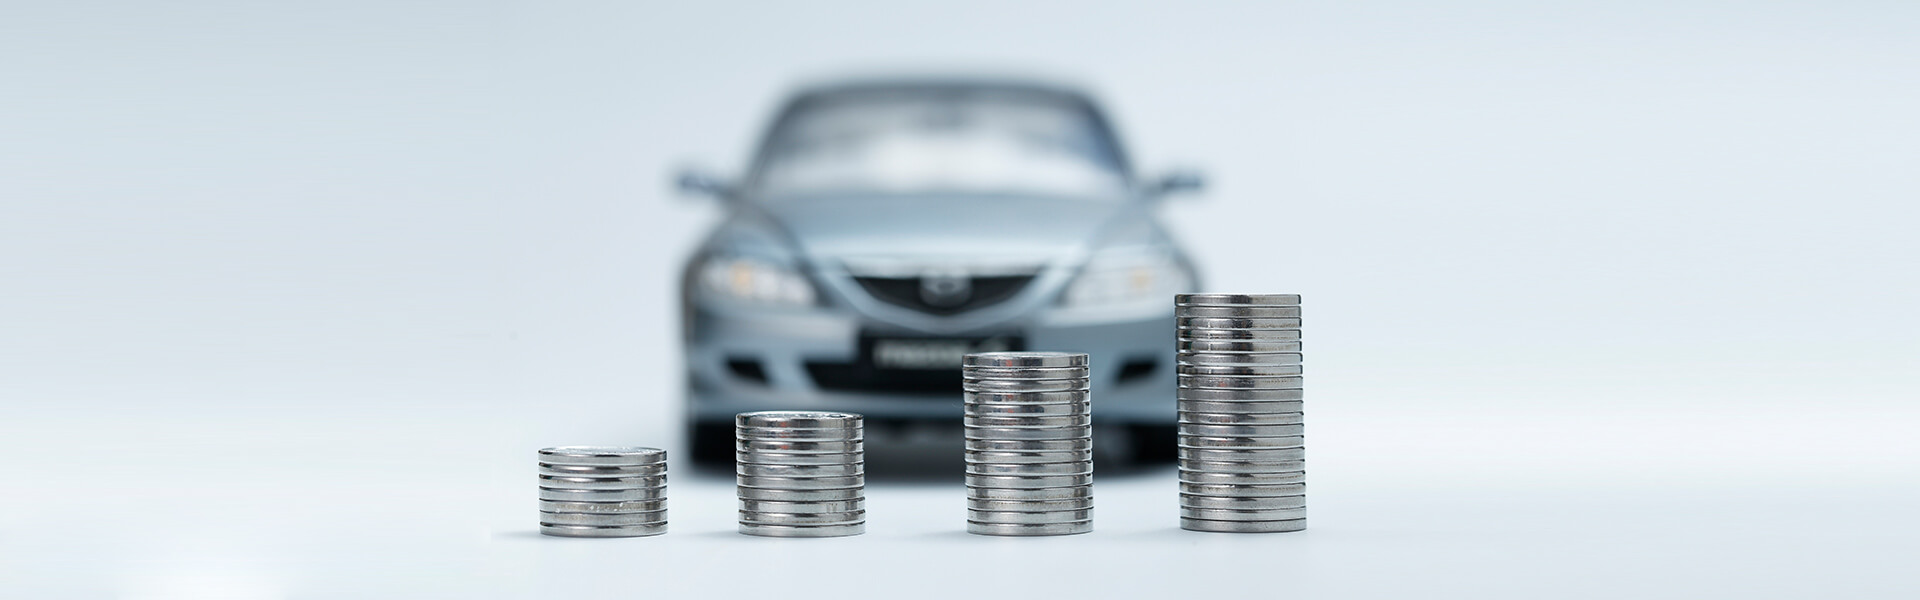 Mua bảo hiểm ô tô giá rẻ: Bí quyết là gì?